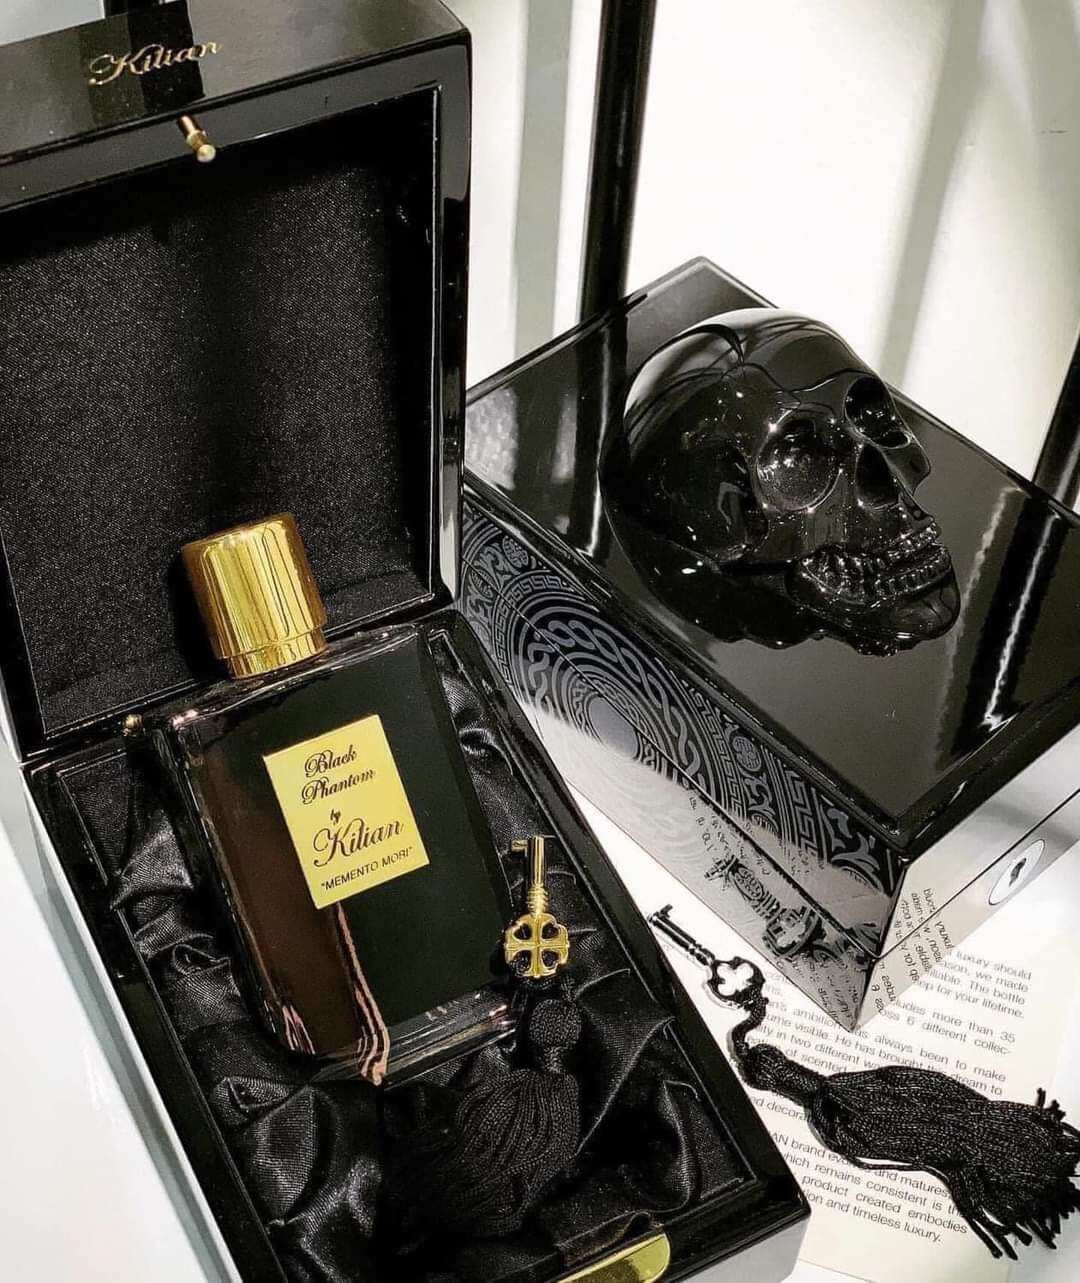 [CHÍNH HÃNG] Nước hoa nam nữ Black Phantom - Memento Mori Nước hoa đầu lâu| Đẳng cấp,sang trọng, cuốn hút,thơm 24h